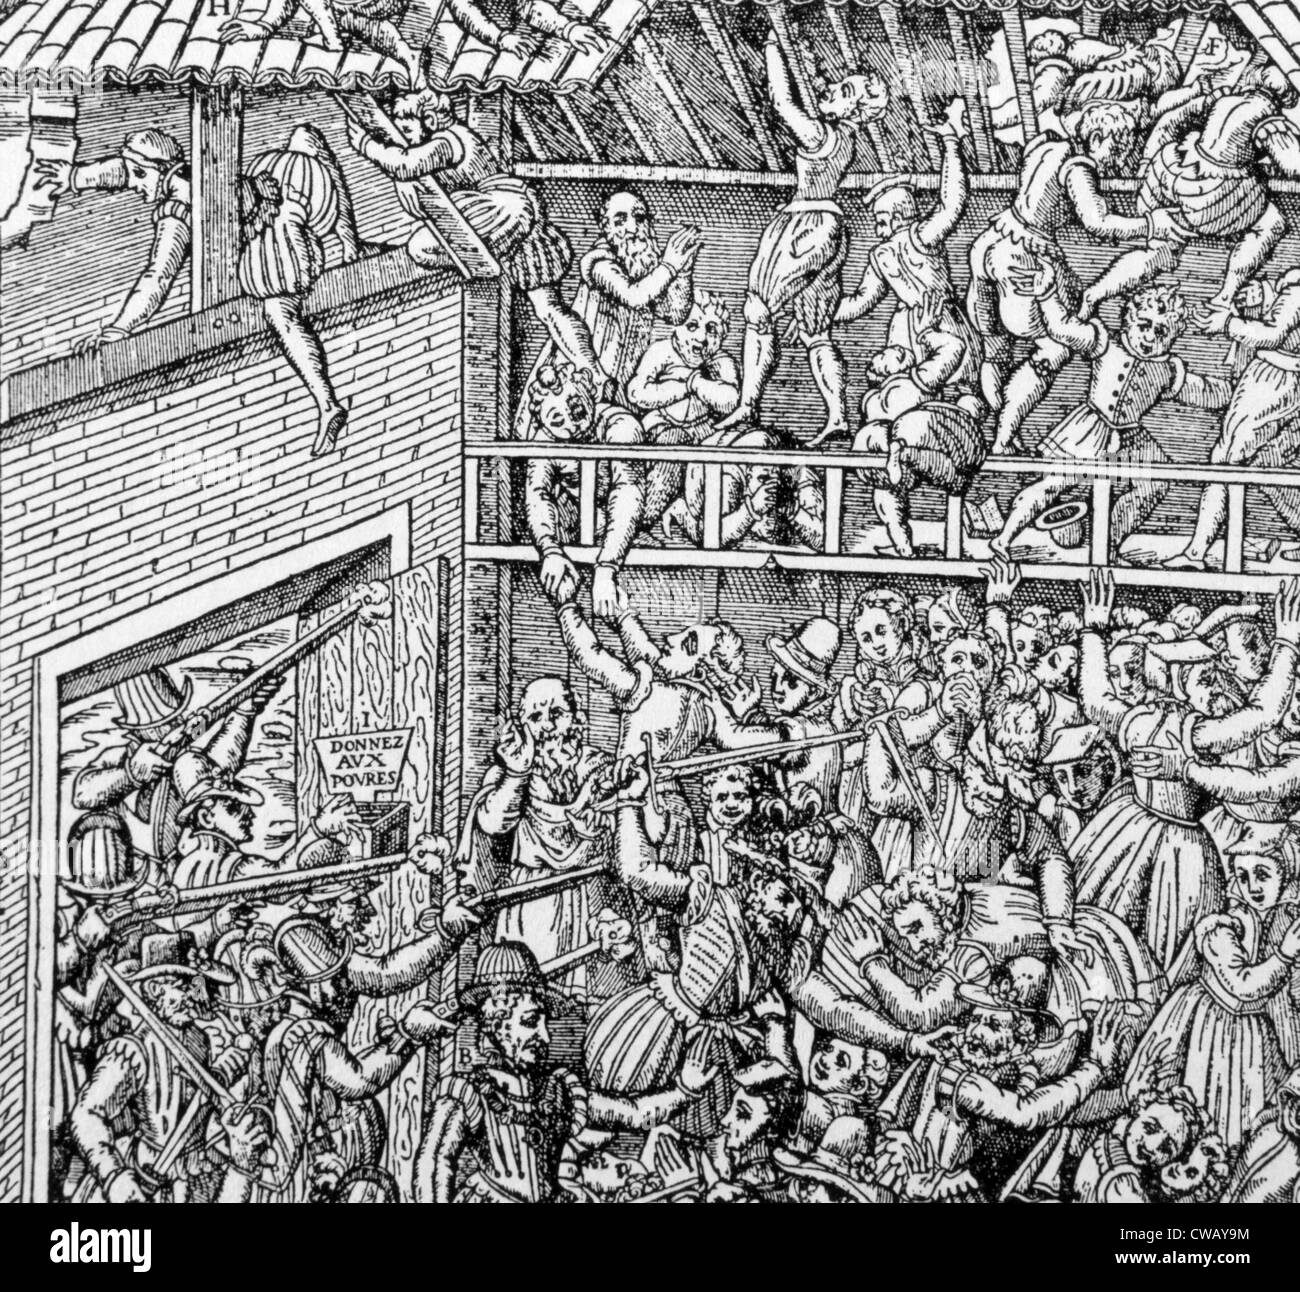 Massaker an einer hugenottischen Gemeinde in einer Scheune von Duc de Guise und seinen Männern, Vassy, Frankreich, 1562. Stockfoto